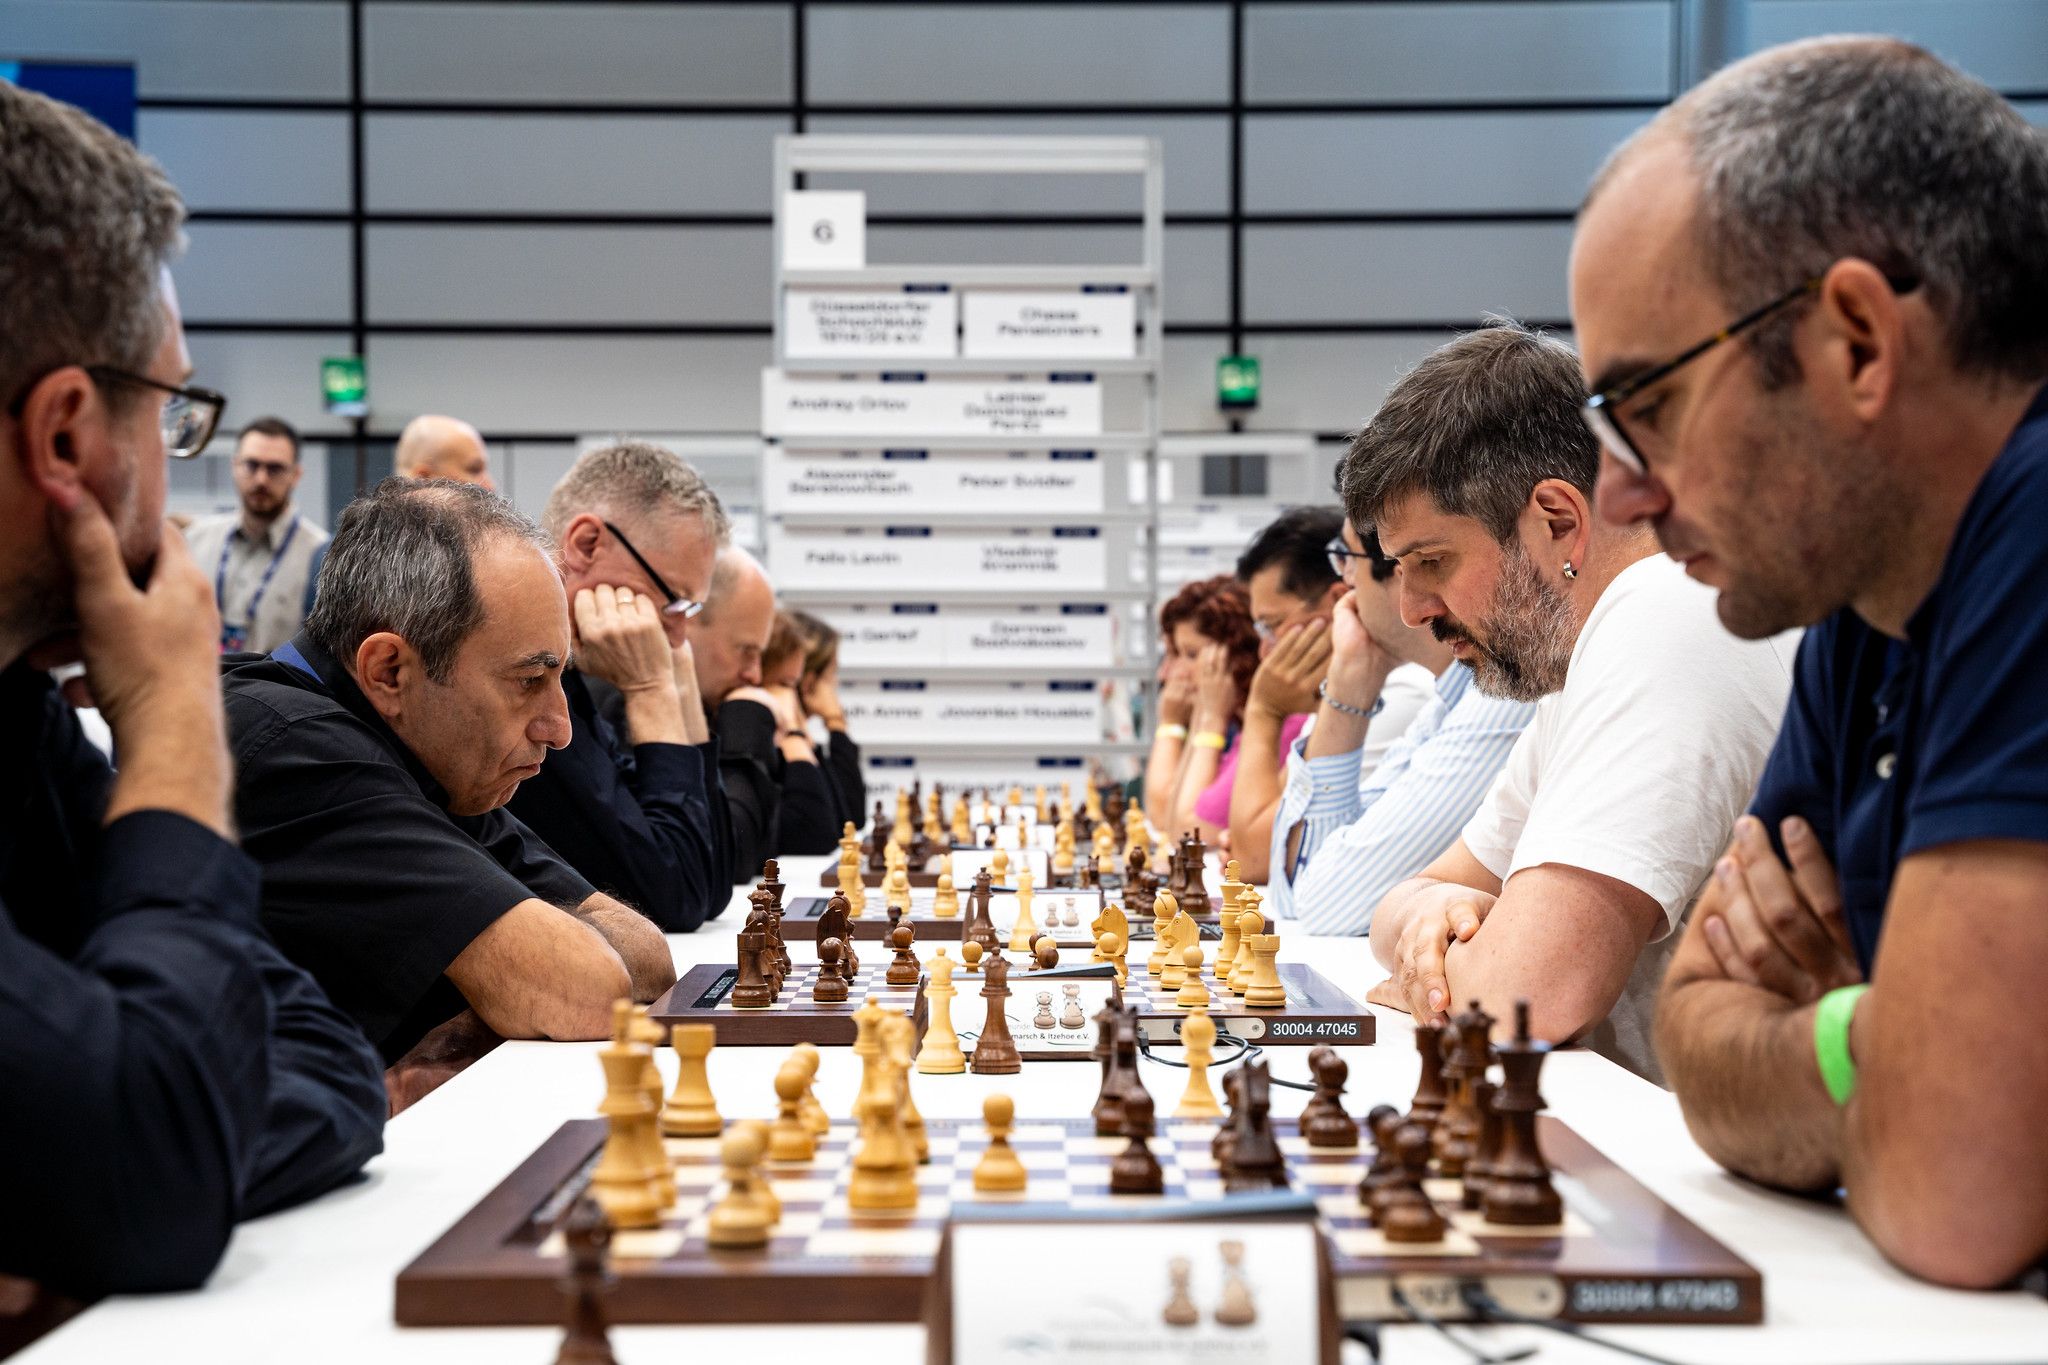 Chessable Masters final: Praggnanandhaa falters at opening hurdle